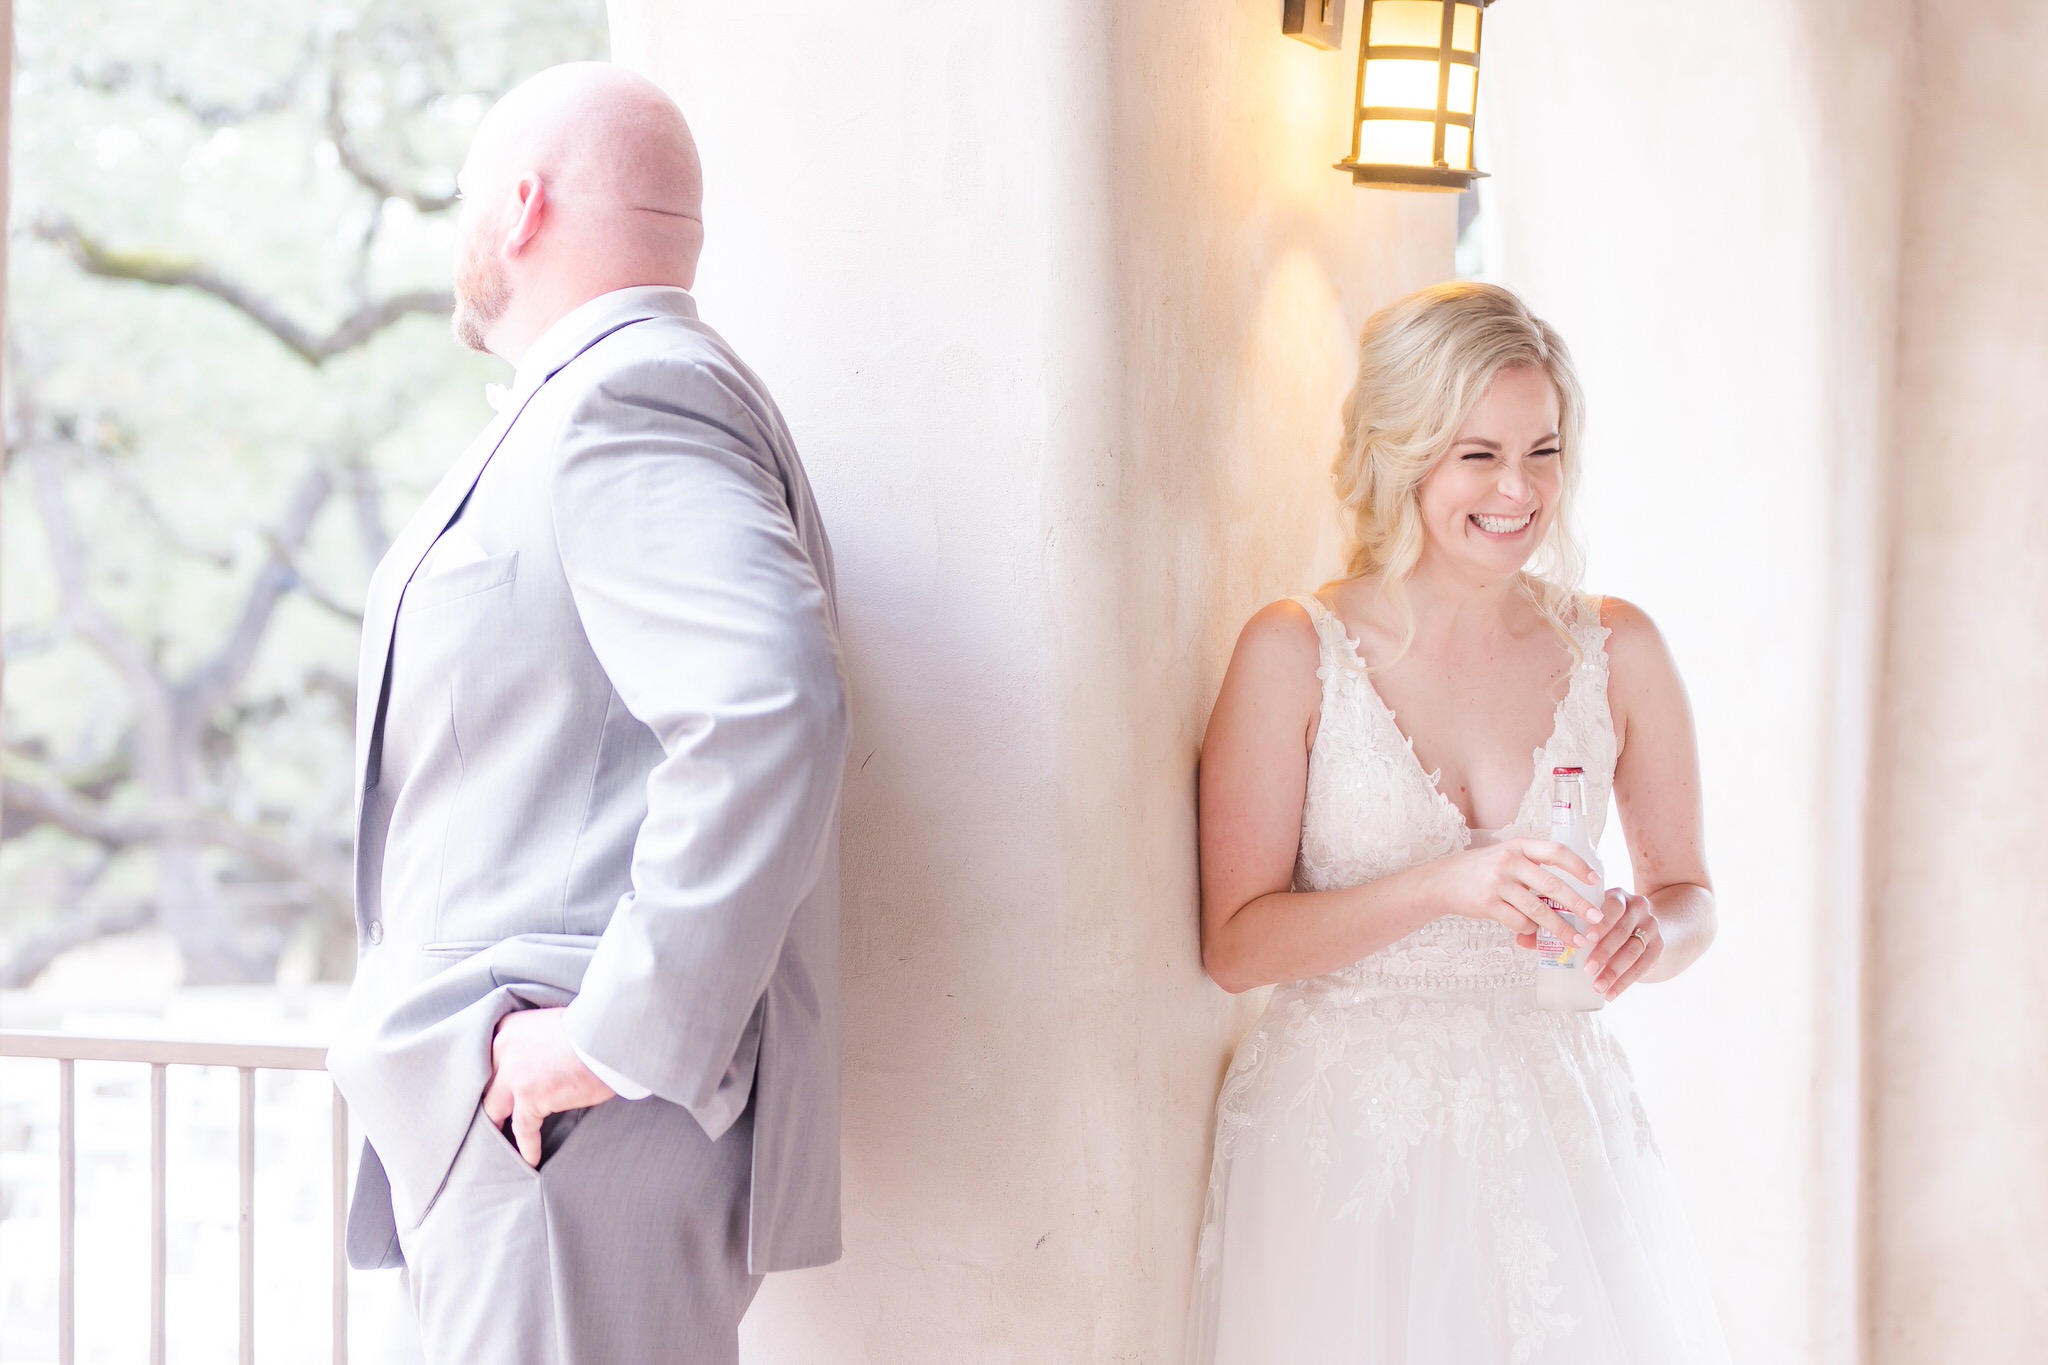 A Grey & Gold wedding at Lost Mission in Spring Branch, TX by Dawn Elizabeth Studios, San Antonio Wedding Photographer